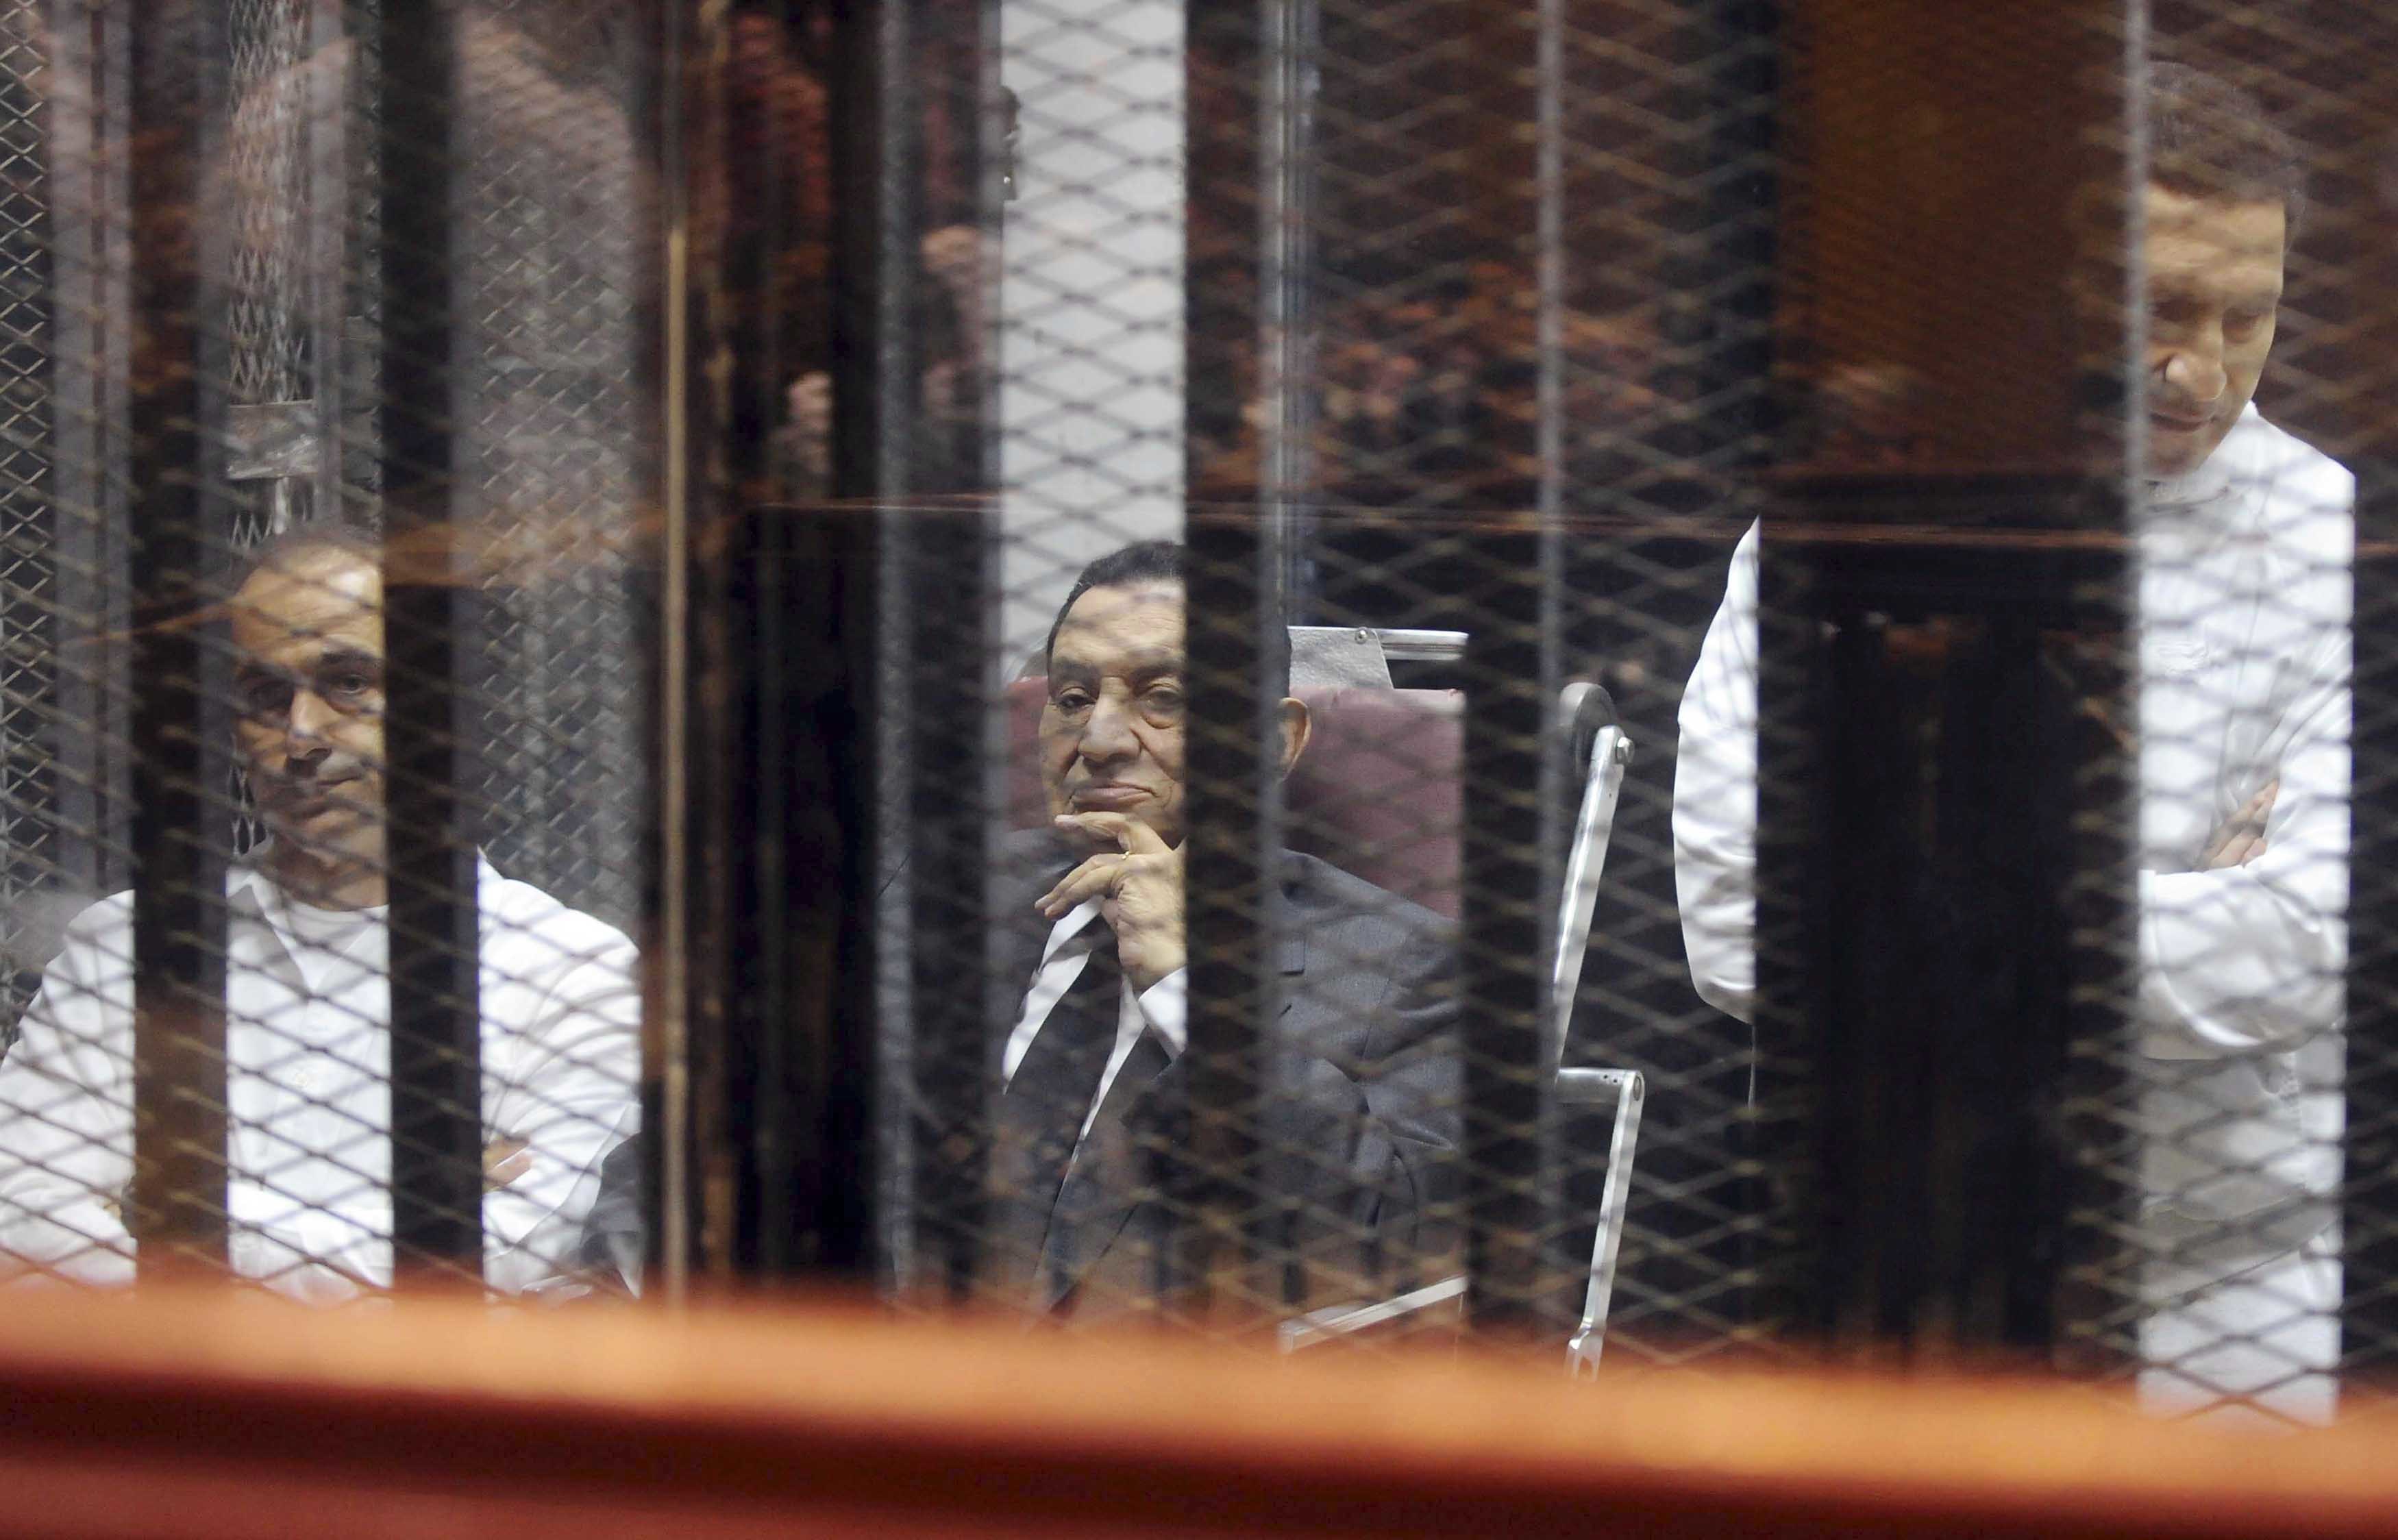 Οι δικαστές του Καΐρου στέλνουν στη φυλακή τον Μουμπάρακ και τους γιους του